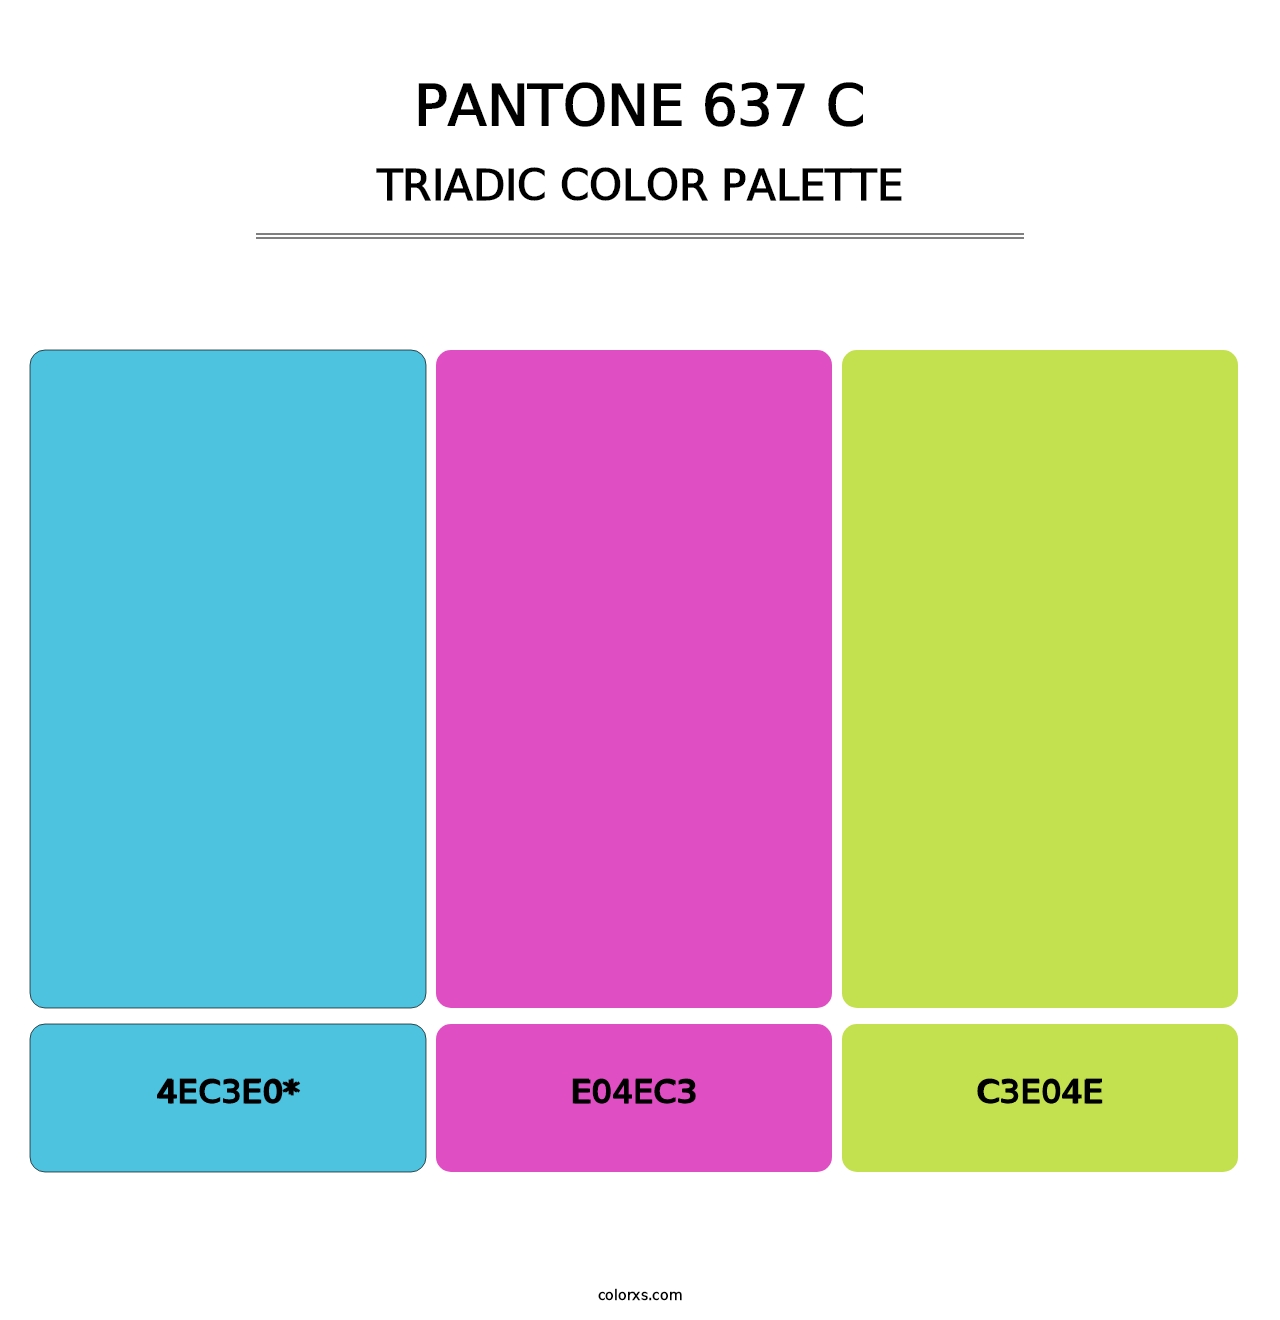 PANTONE 637 C - Triadic Color Palette